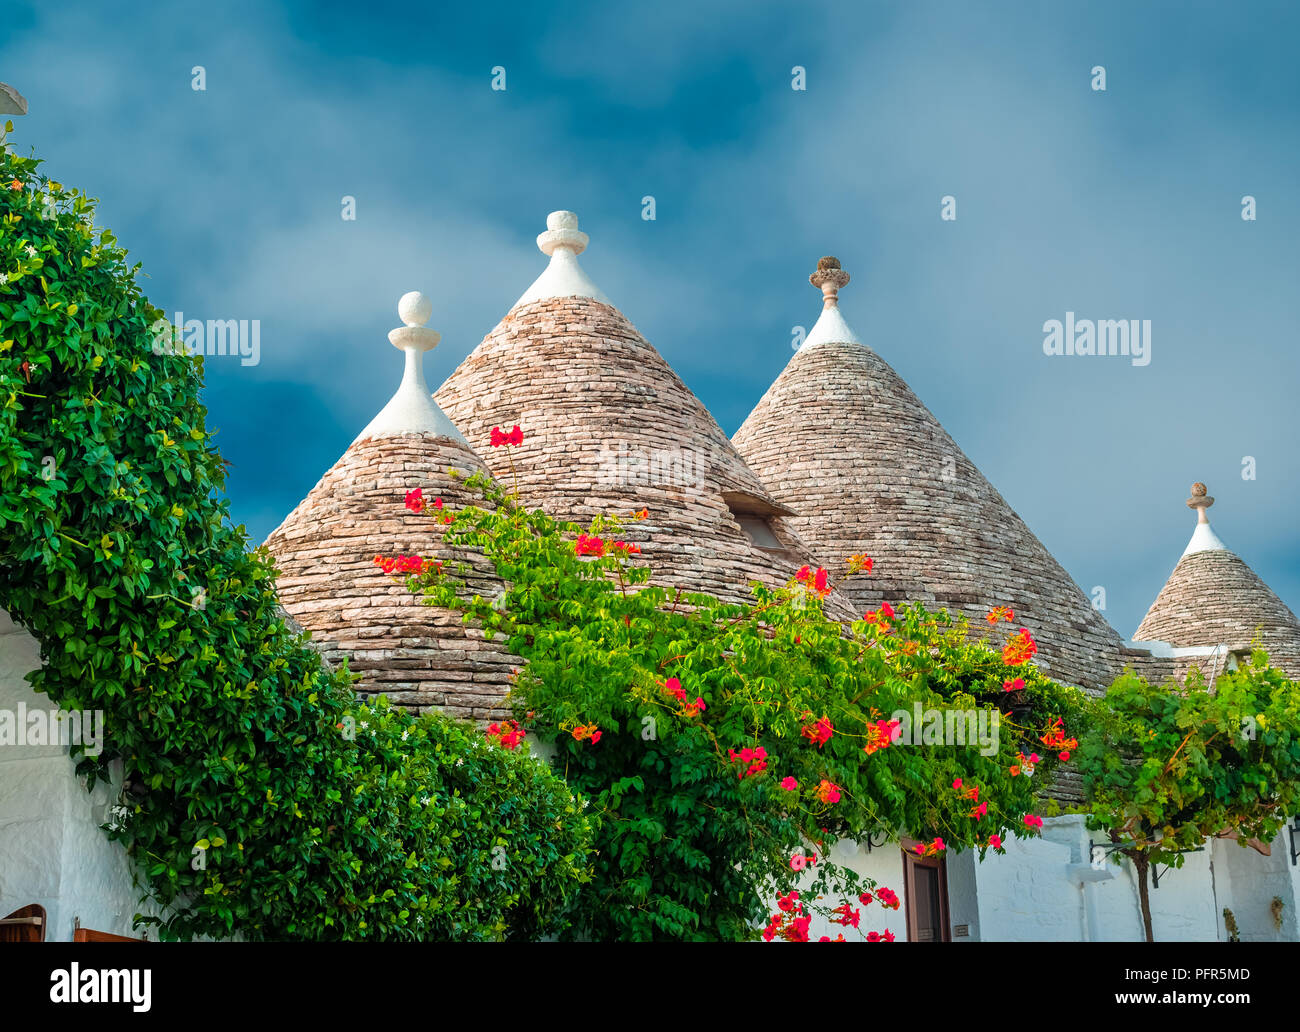 Casa Tradizionale arhitecture sul tetto del folk village Trulli di Alberobello, Italia Foto Stock